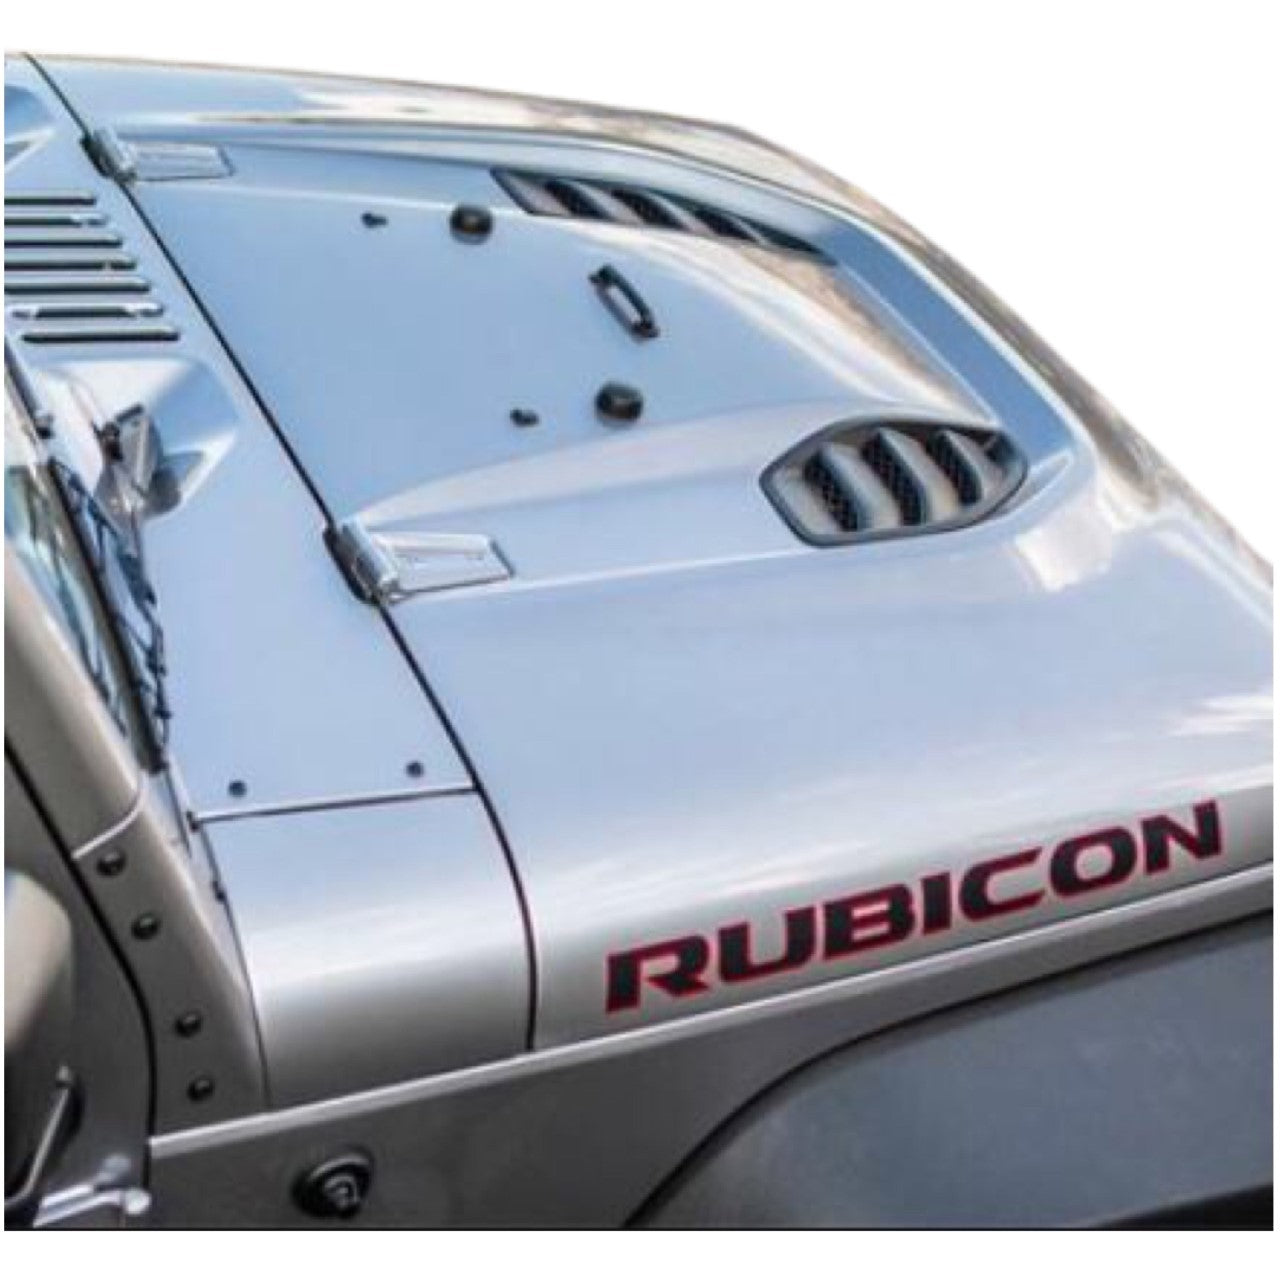 Rubicon Bonnet Vent for Jeep Wrangler JK 2007-2017